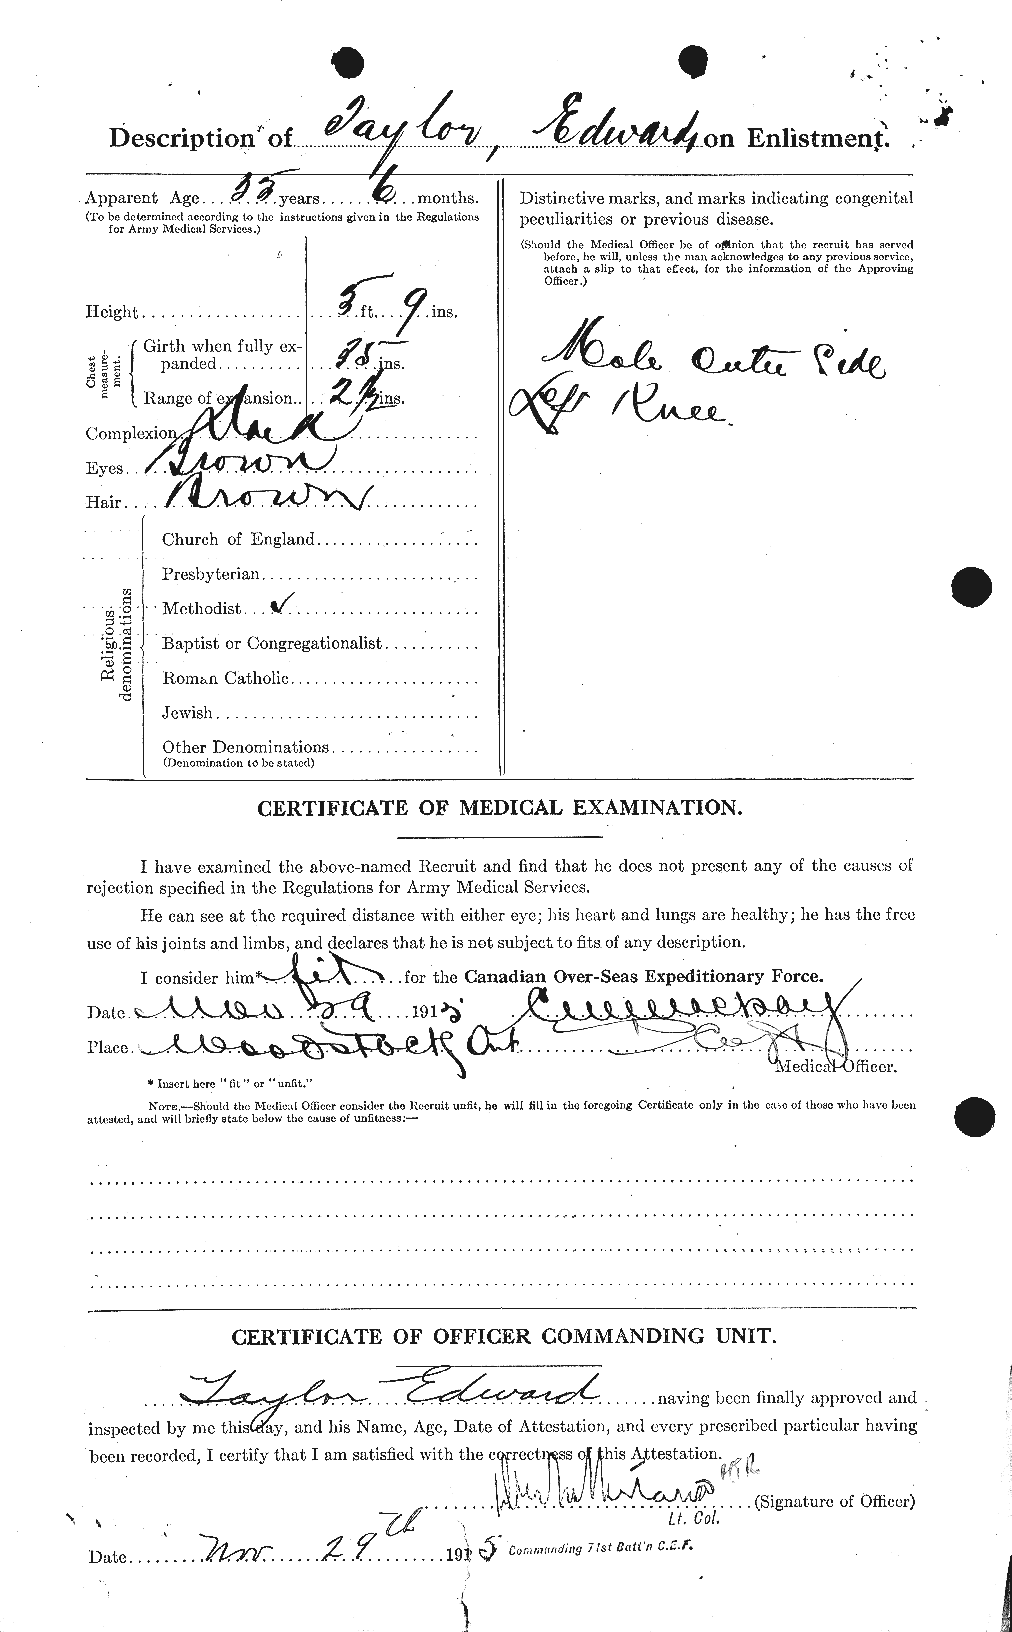 Dossiers du Personnel de la Première Guerre mondiale - CEC 627286b